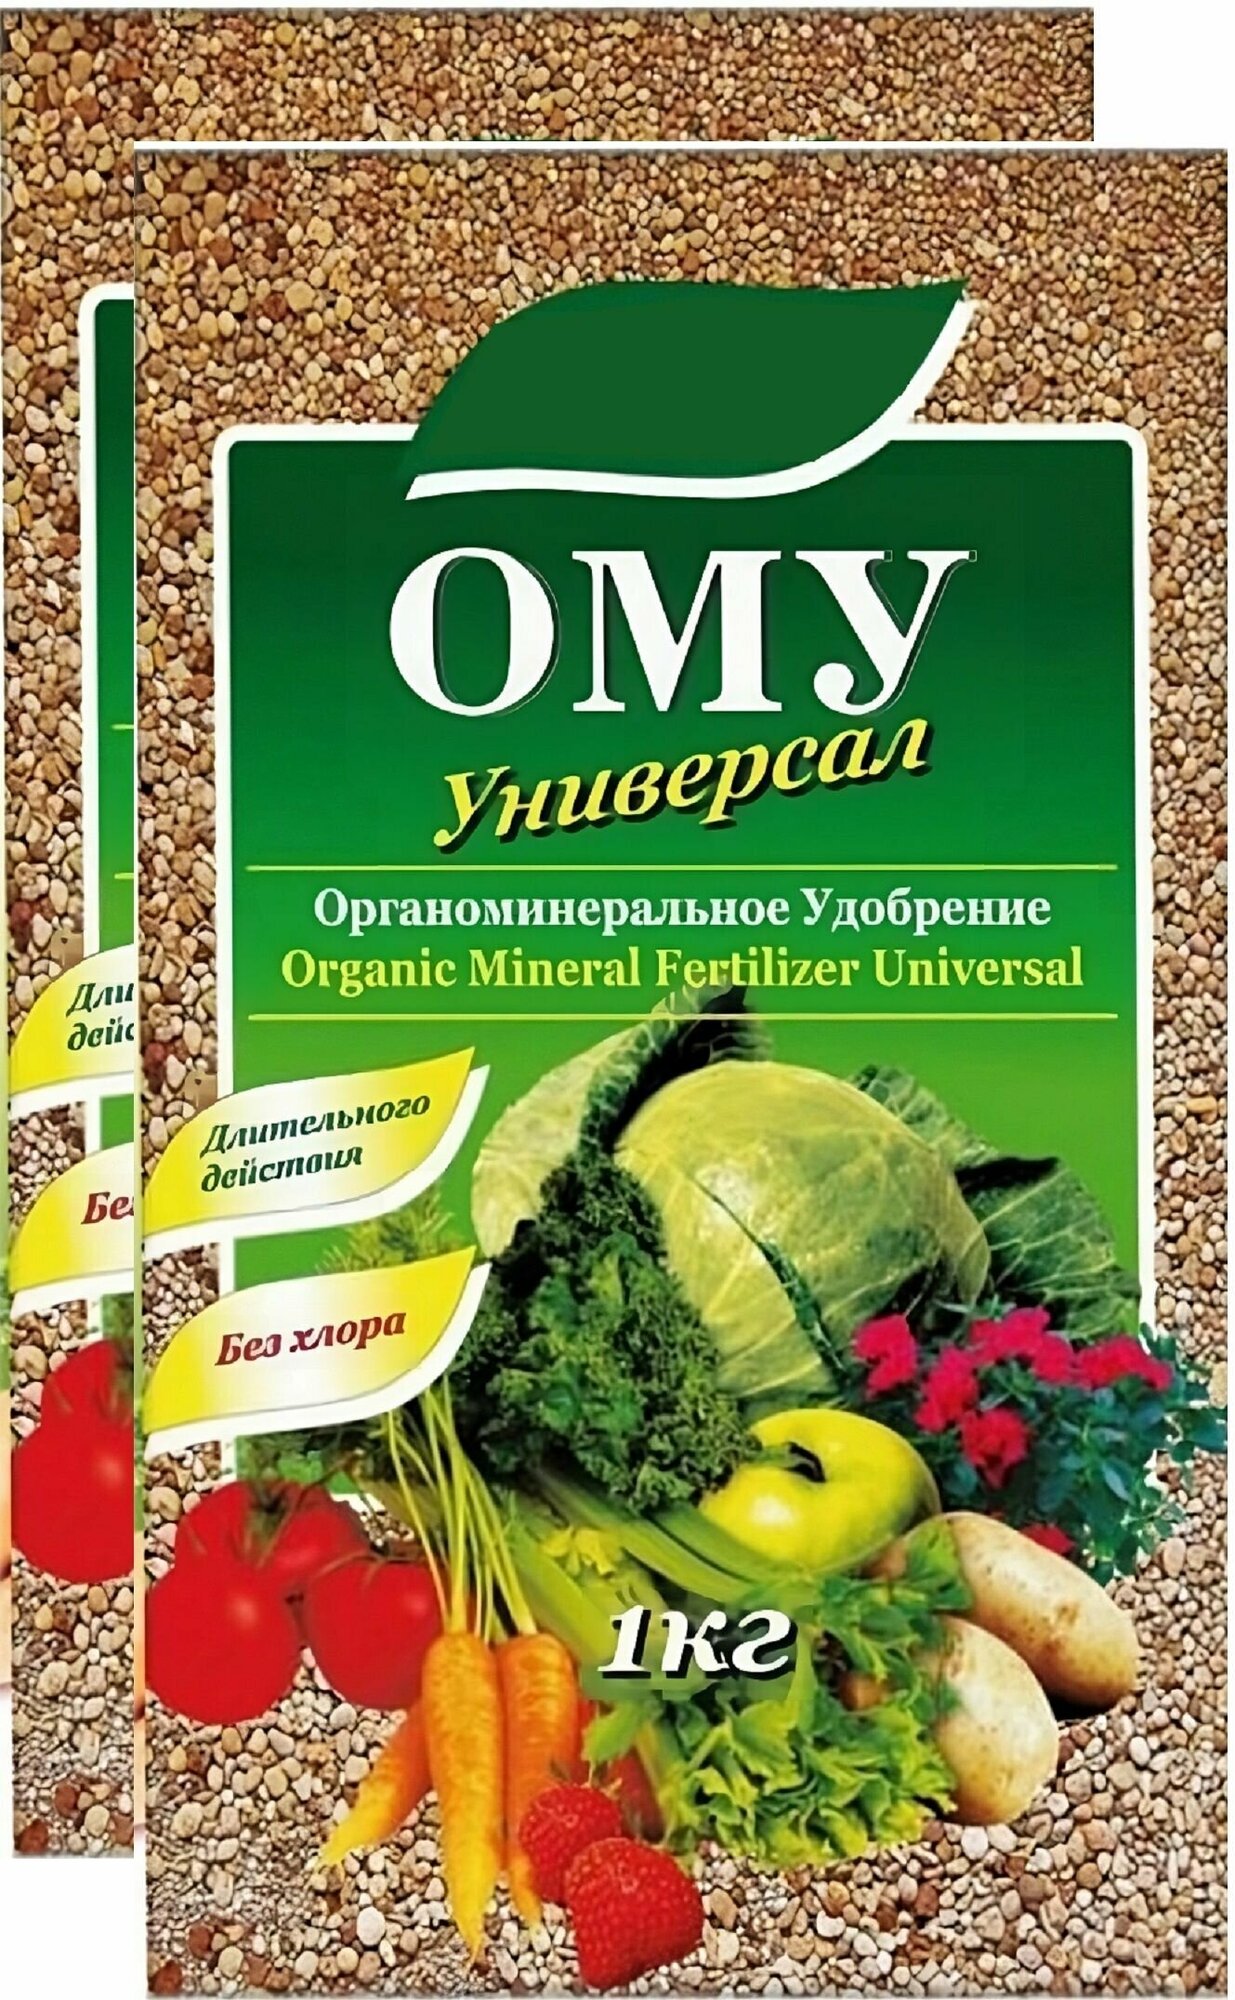 Комплексное универсальное органоминеральное удобрение ОМУ (2 шт по 1 кг) для всех видов культур